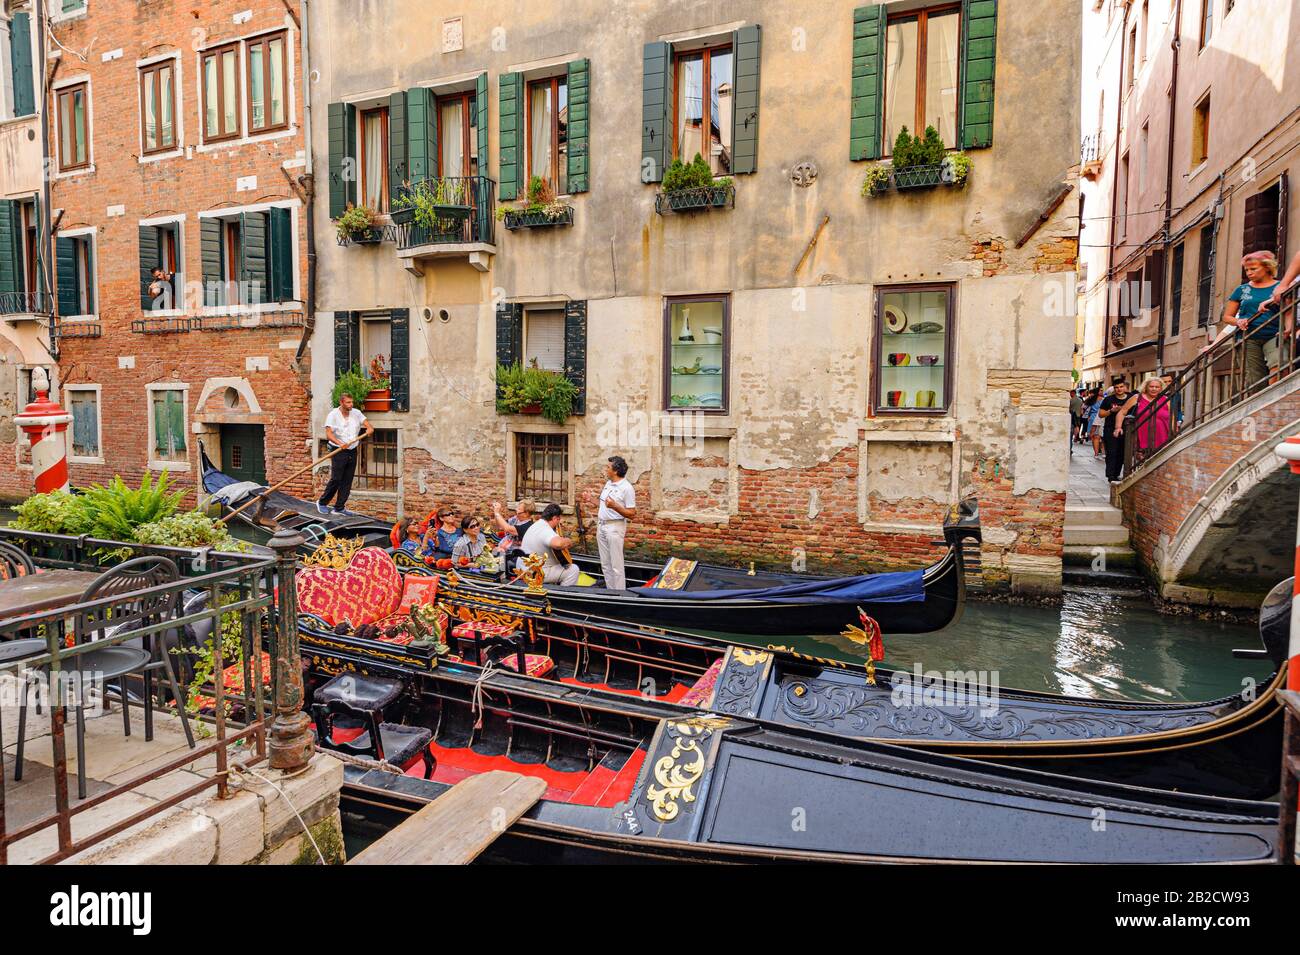 Venezia, ITALIA - 26 GIUGNO 2014: I turisti viaggiano su gondole al canale di Venezia, Italia . Il giro in gondola è l'attività turistica più popolare di Venezia. Foto Stock